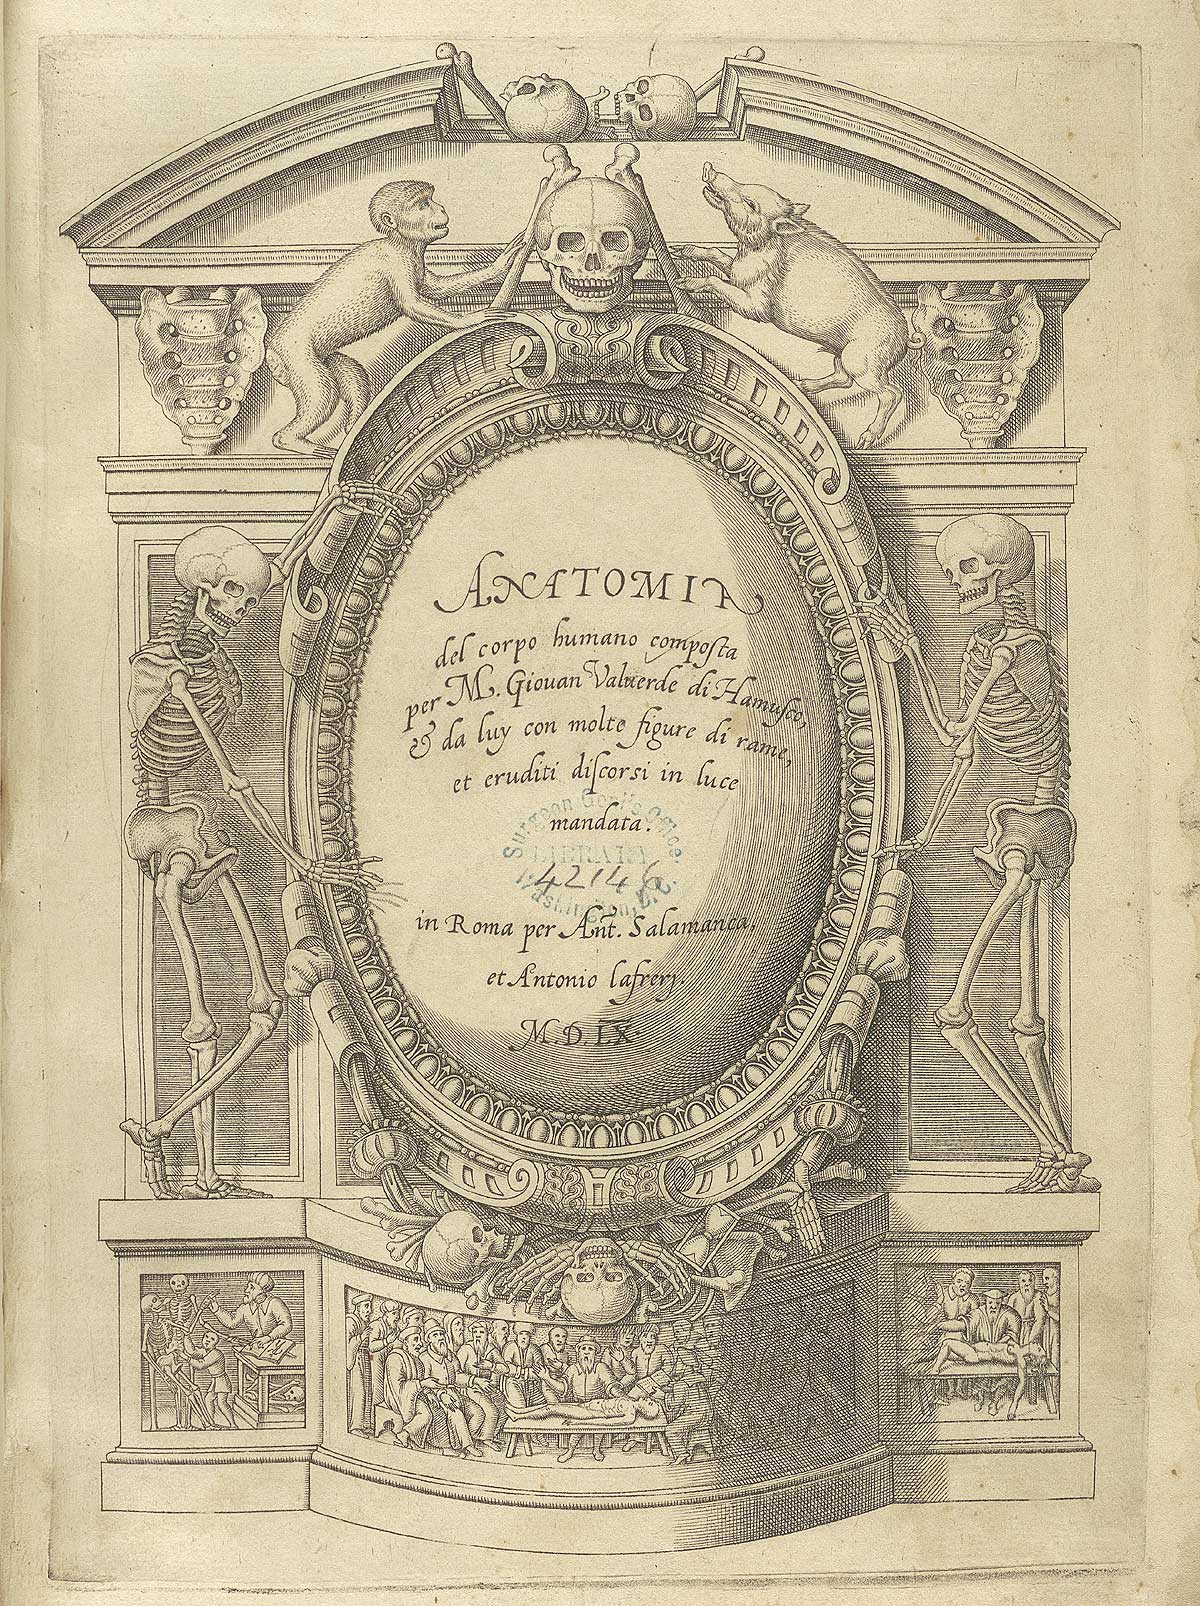 Title page of the Juan Valverde de Amusco's Anatomia del corpo humano.